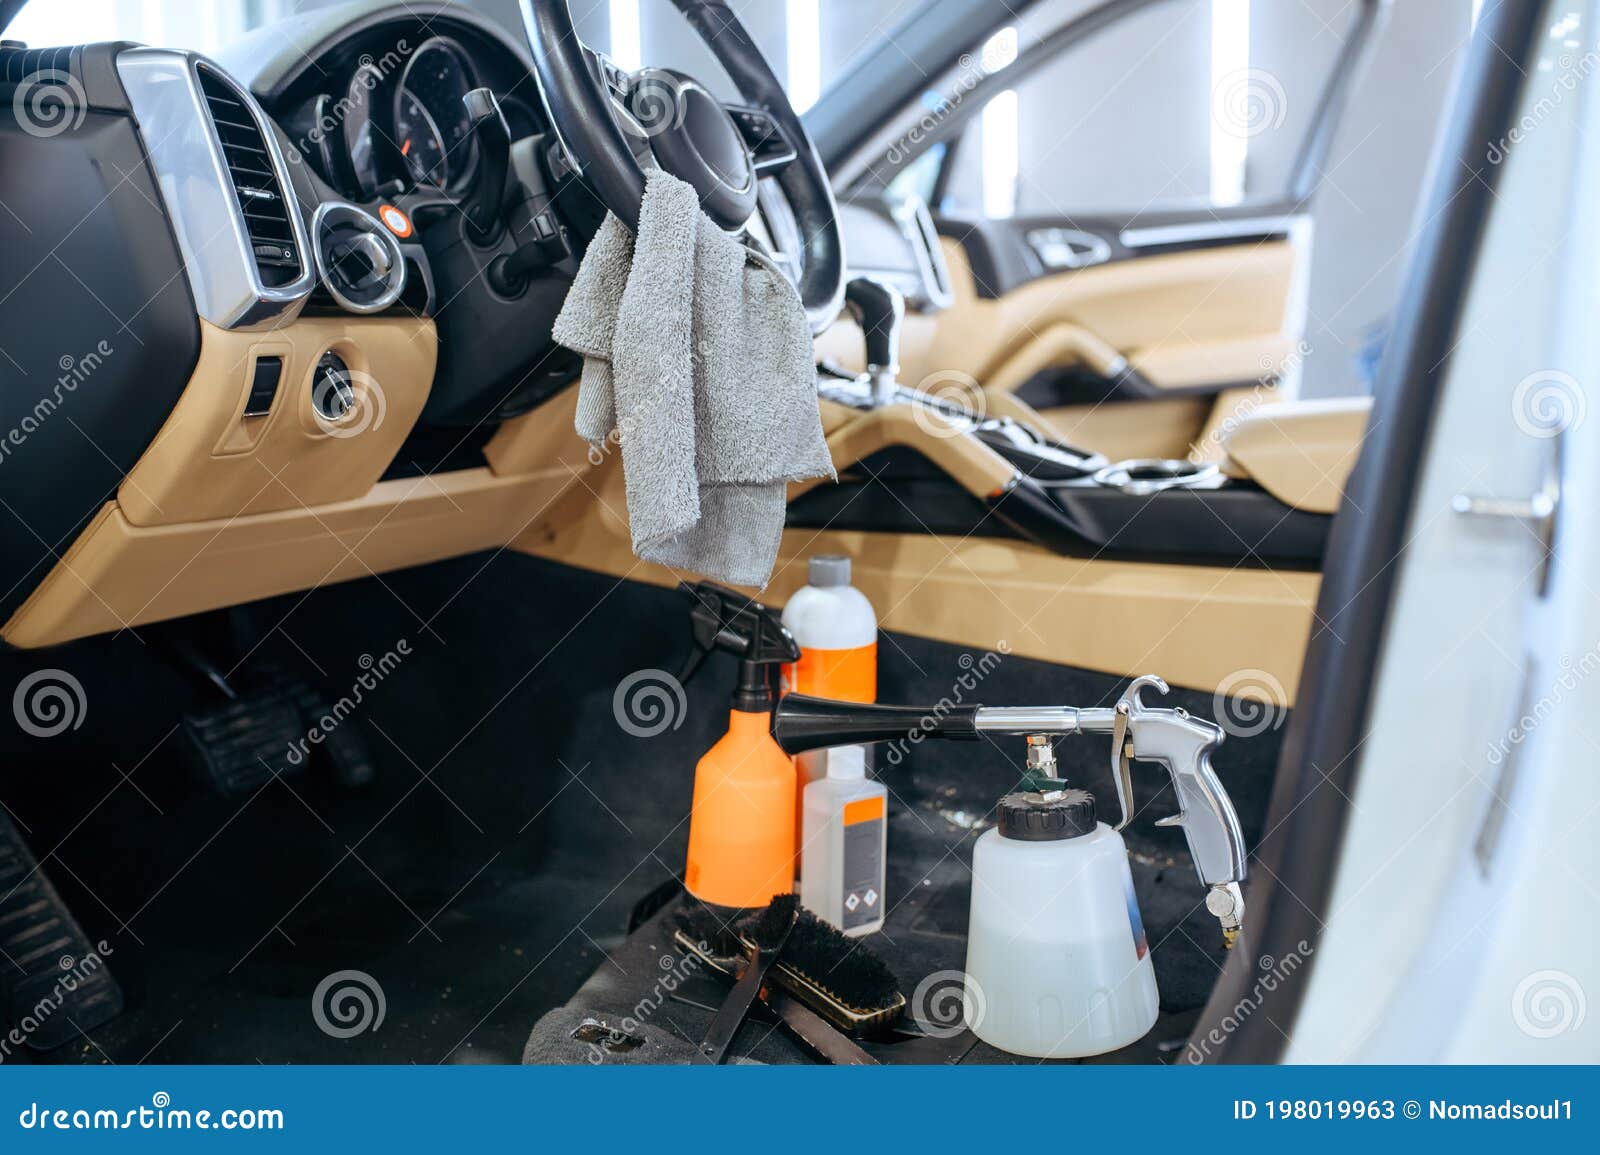 Autoinnenraum Und Tools Für Chemische Reinigung, Führt Im